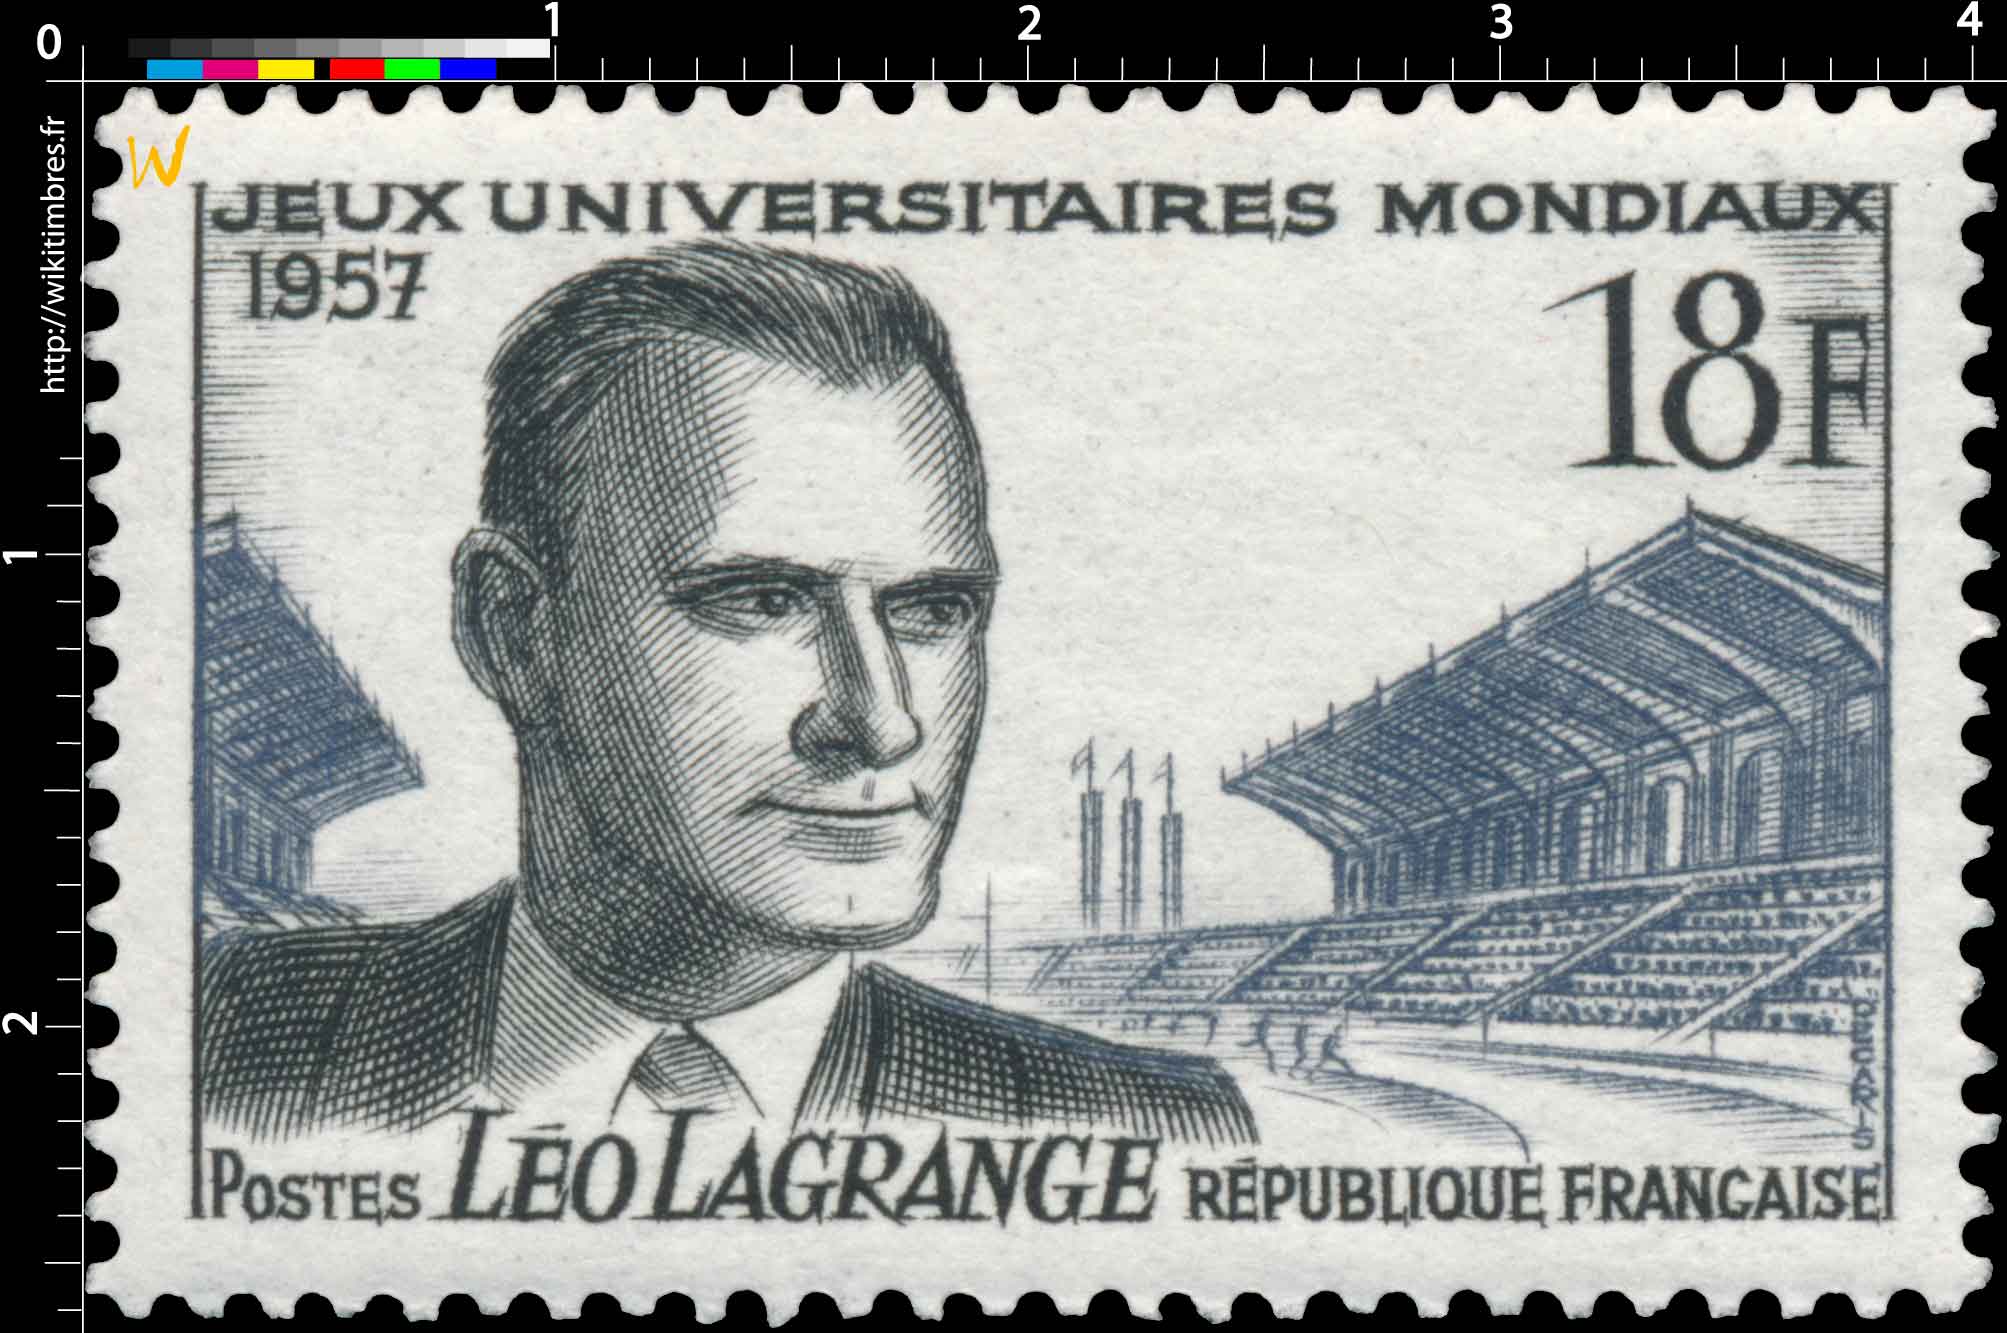 JEUX UNIVERSITAIRES MONDIAUX 1957 LÉO LAGRANGE